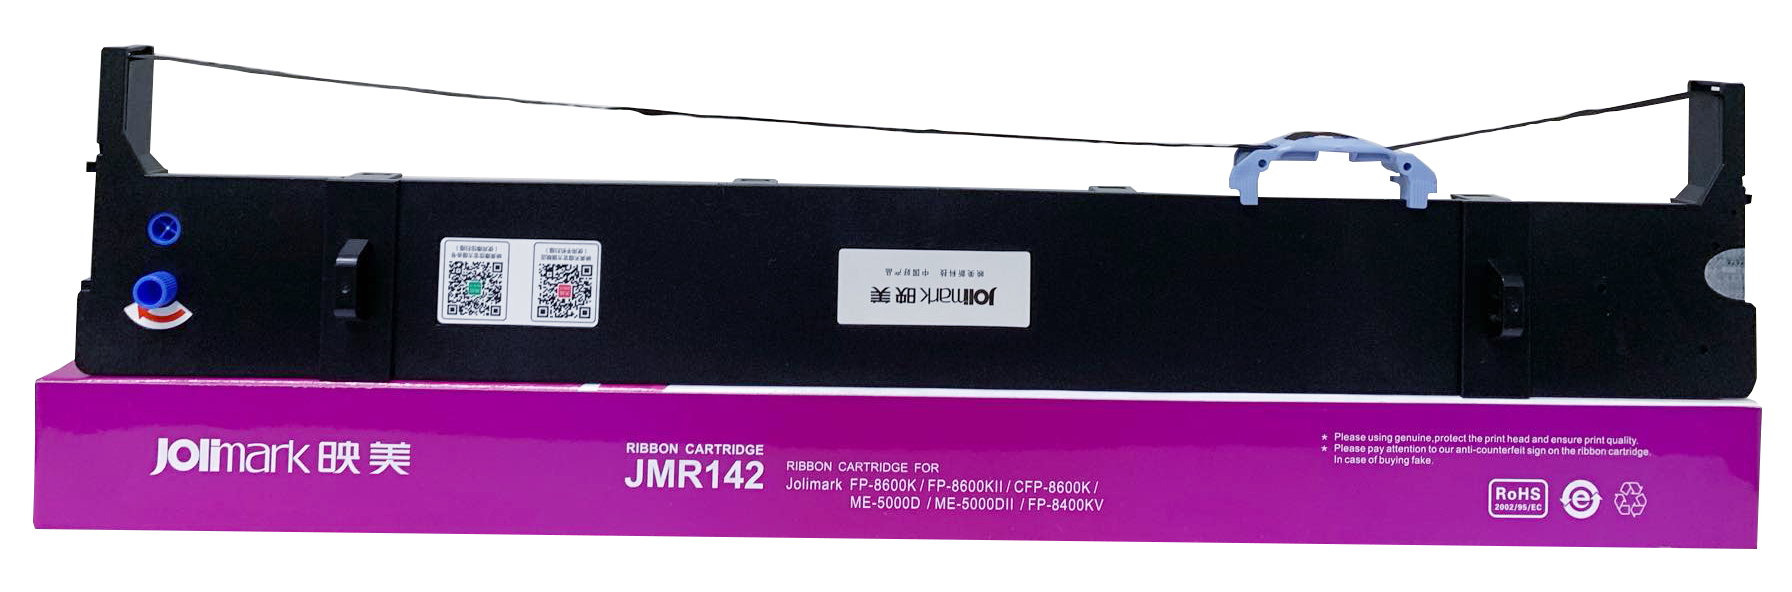 Ribbon Cartridge Jolimark DPO760E